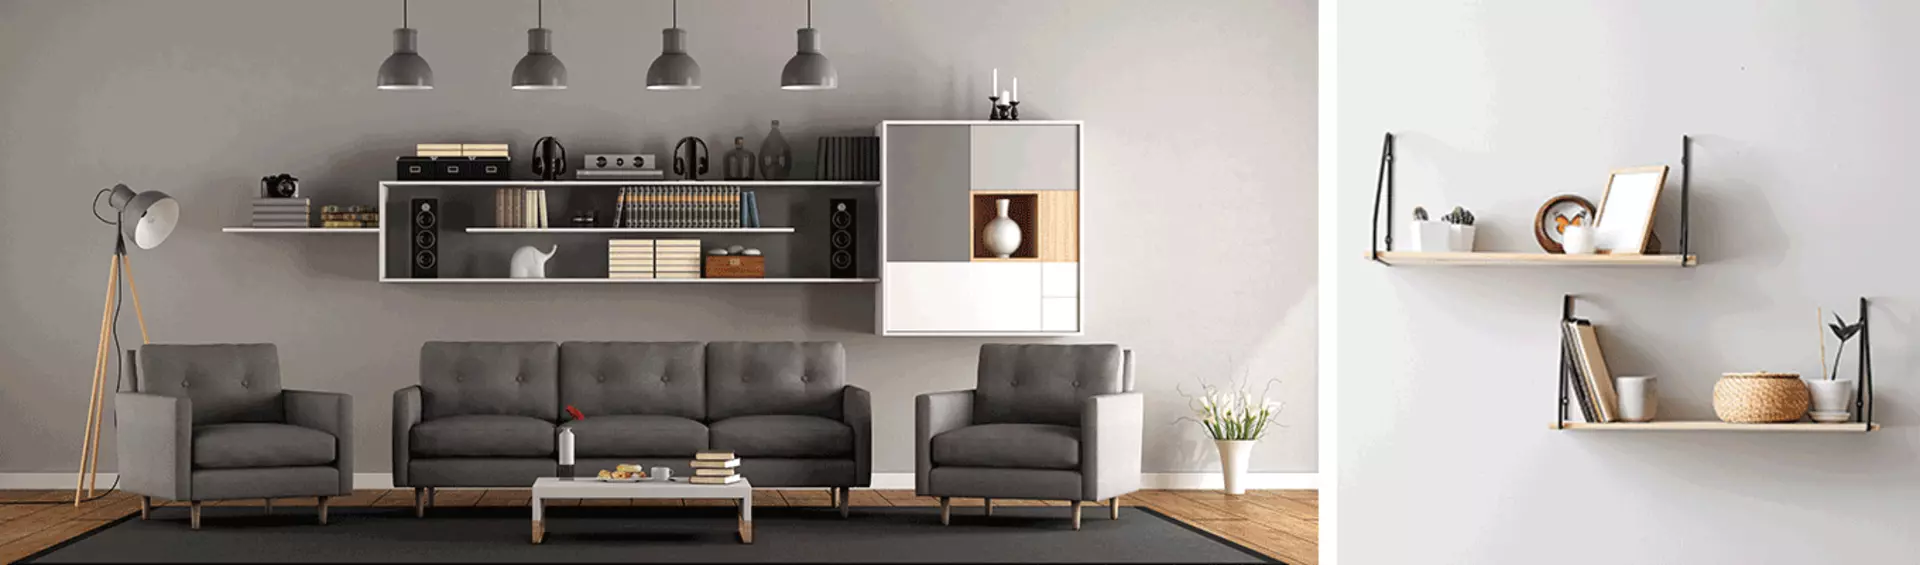 Wohnzimmer mit grauer Couch, weißen und braunen Regalen und anderen Anthrazittönen.